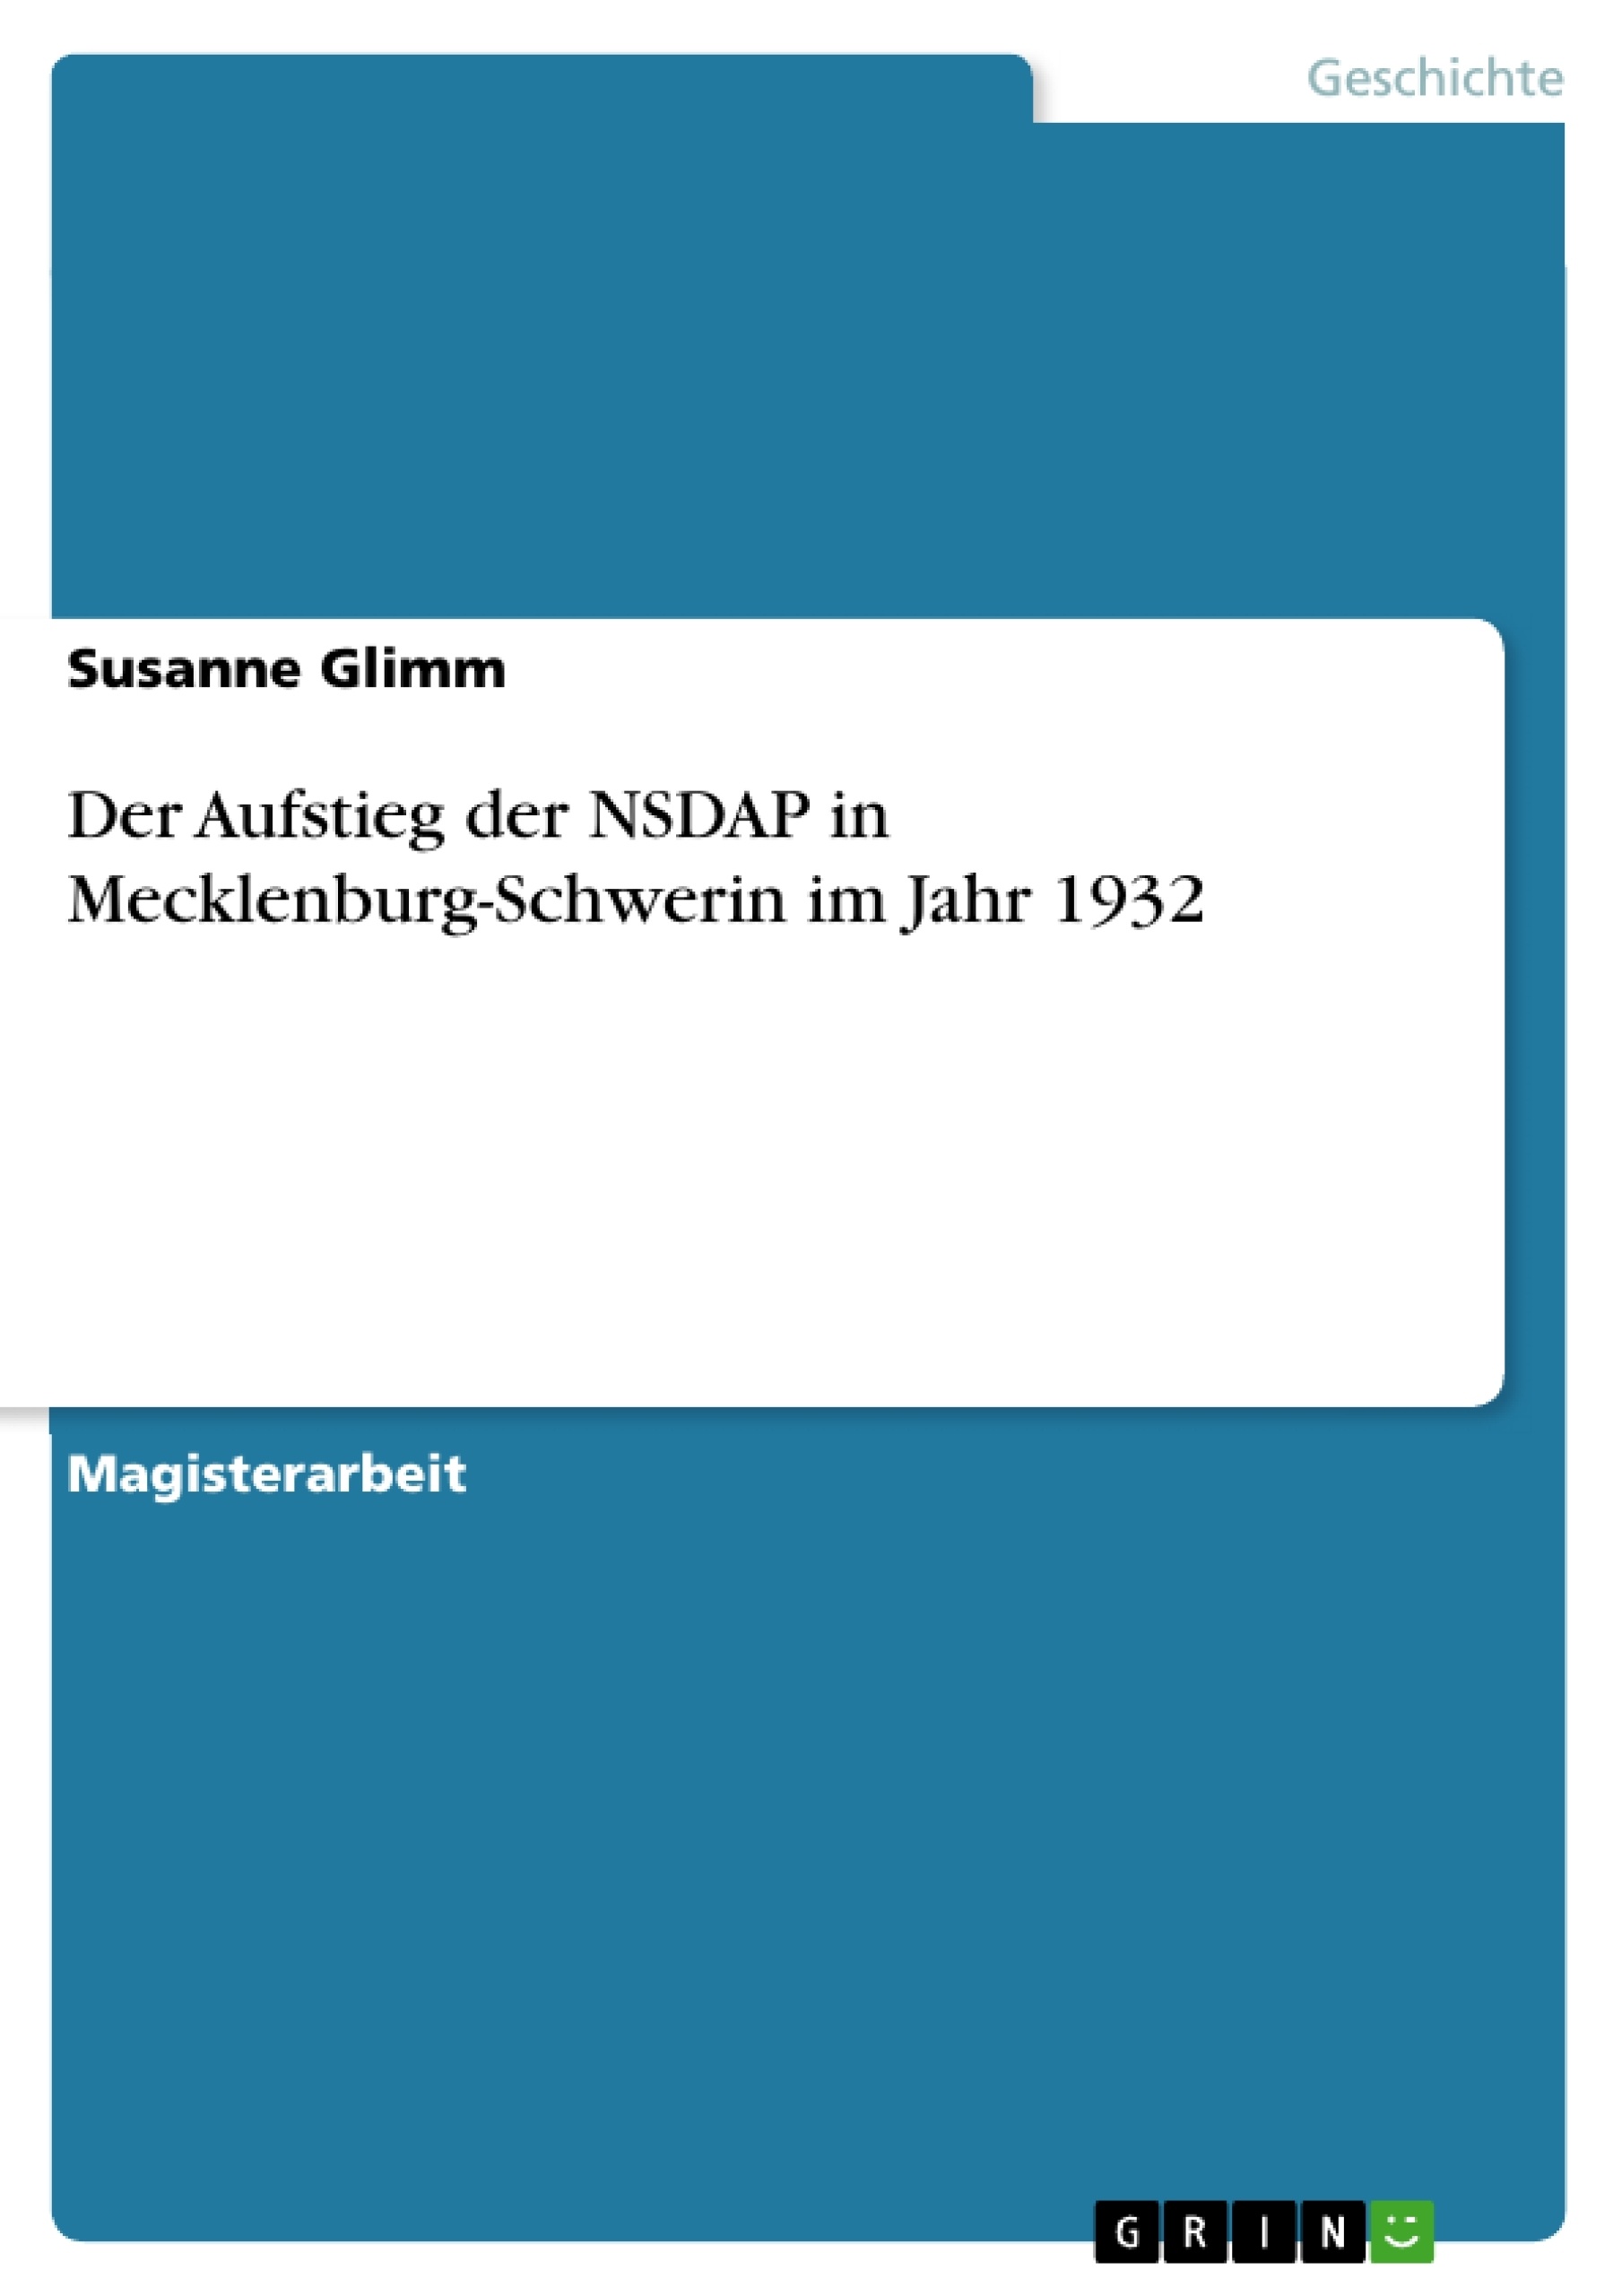 Title: Der Aufstieg der NSDAP in Mecklenburg-Schwerin im Jahr 1932